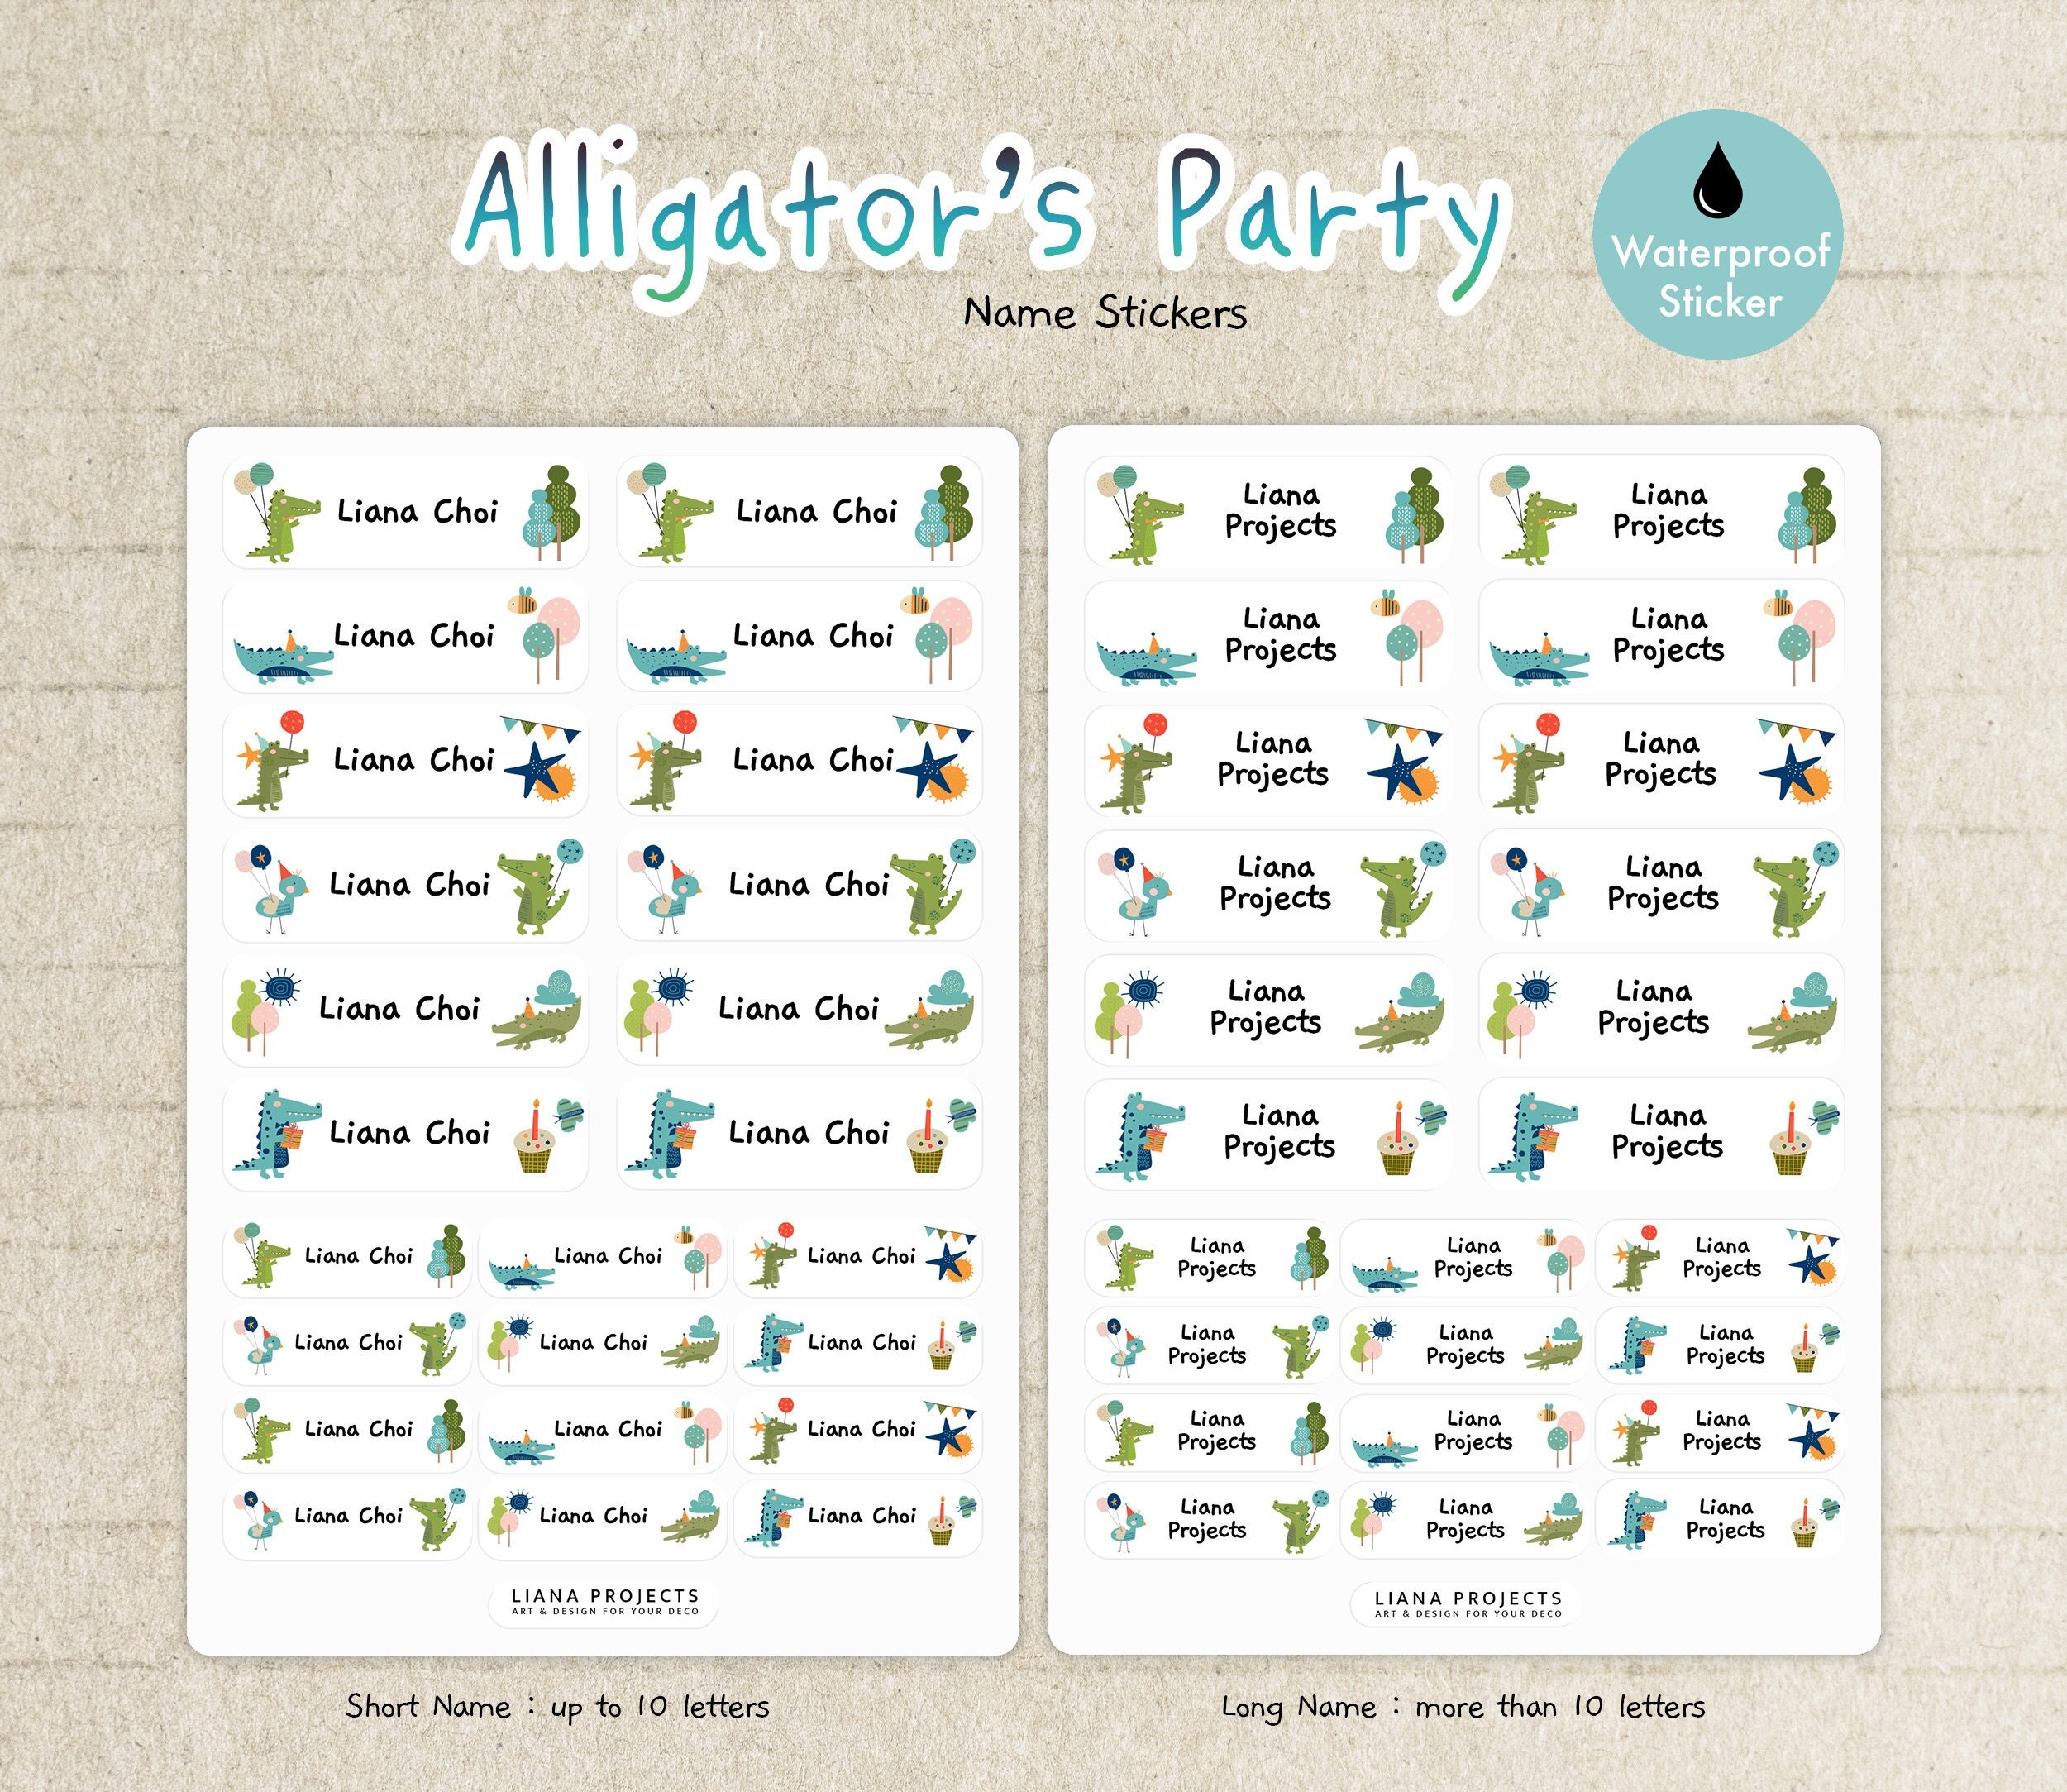 Kindergarten Labels: Alligator Labels For School